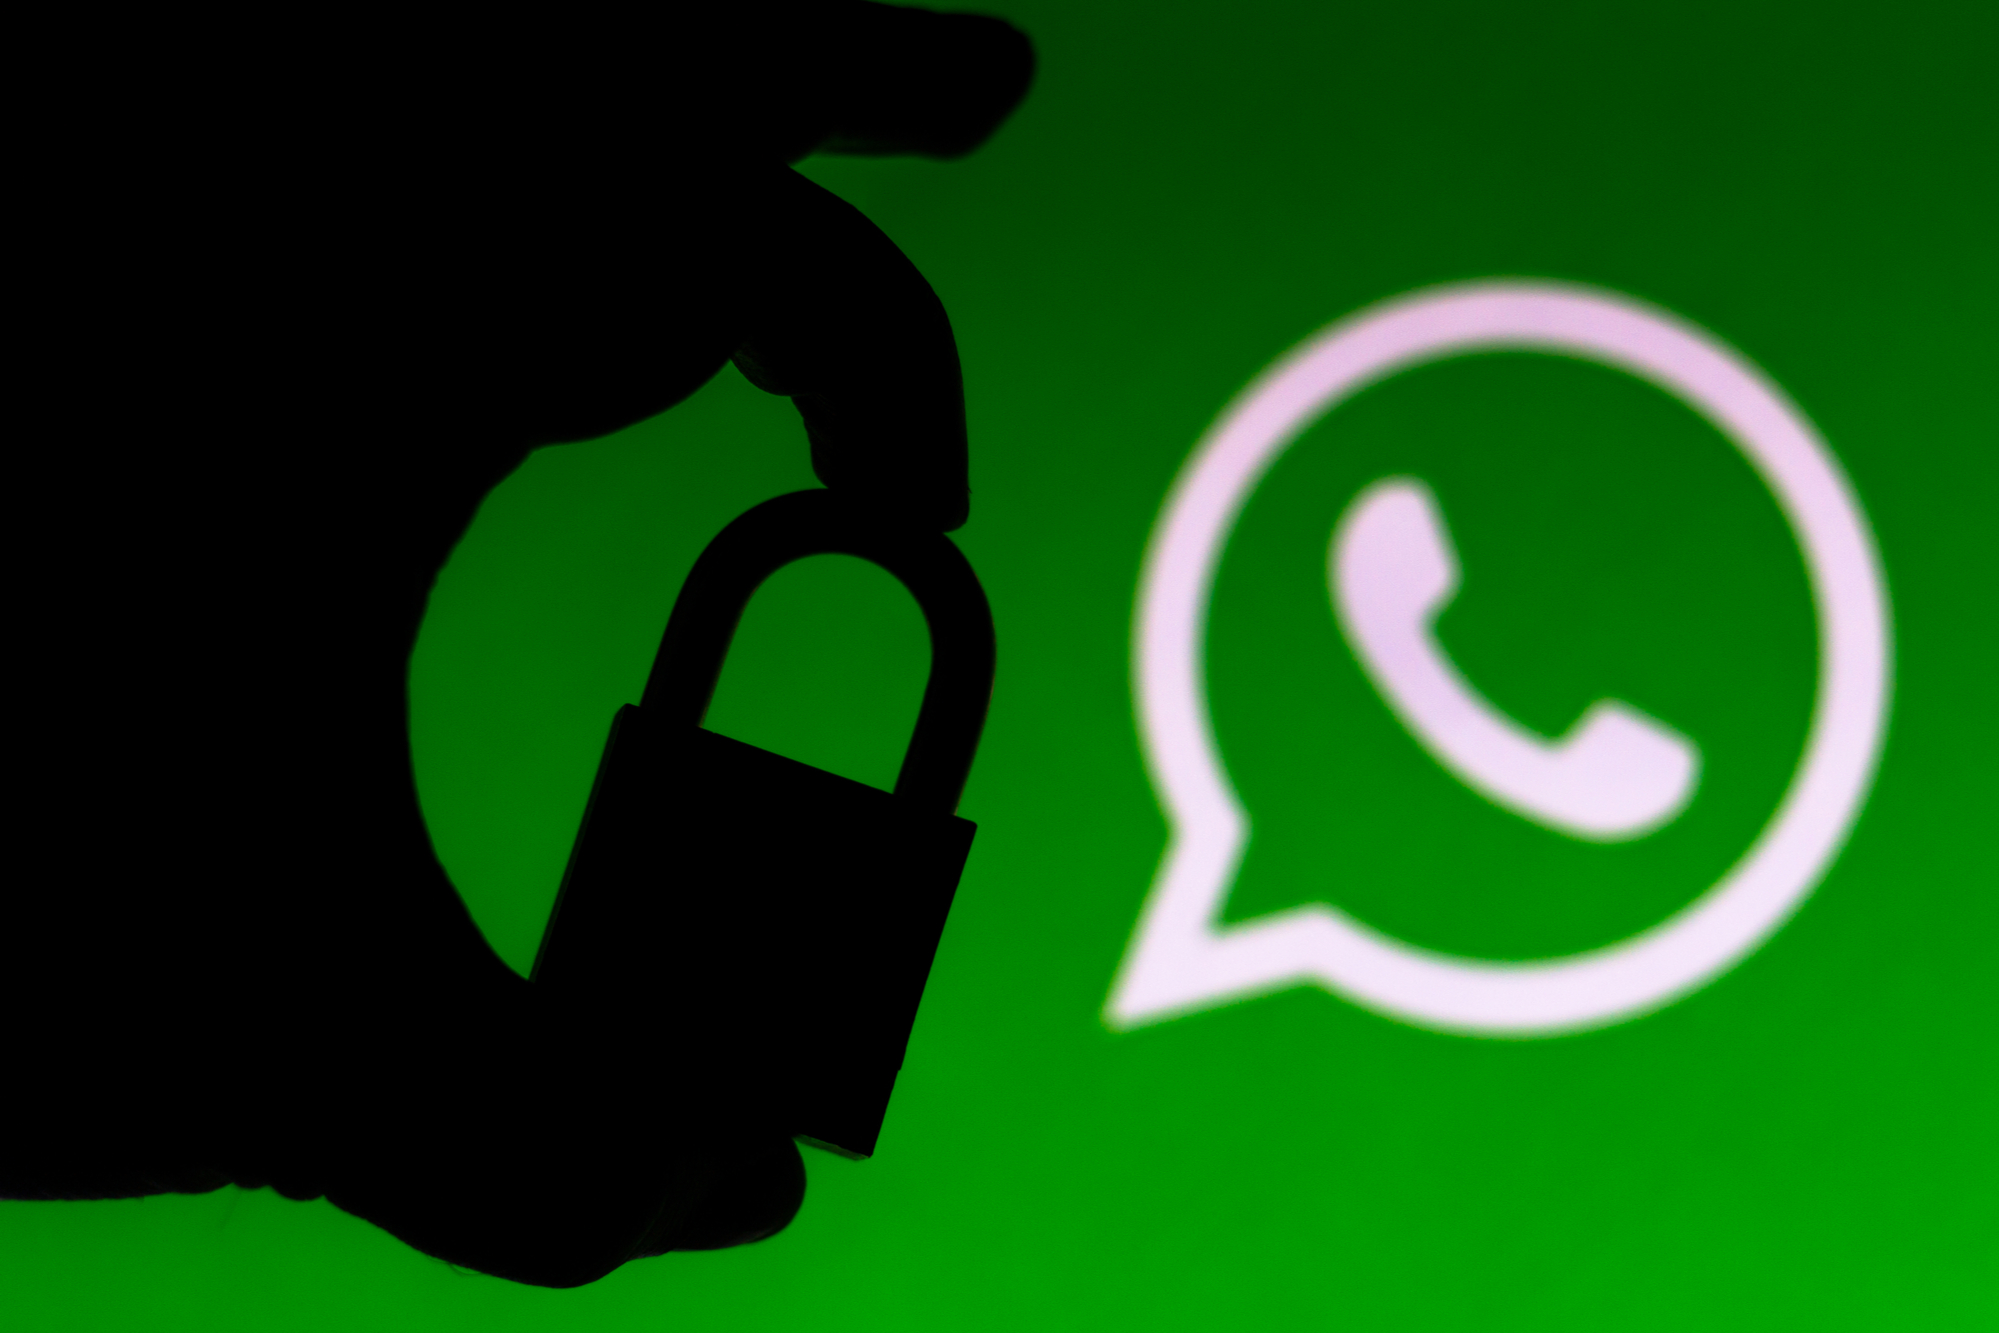 Une faille permet de bloquer un compte WhatsApp grâce au numéro de téléphone associé